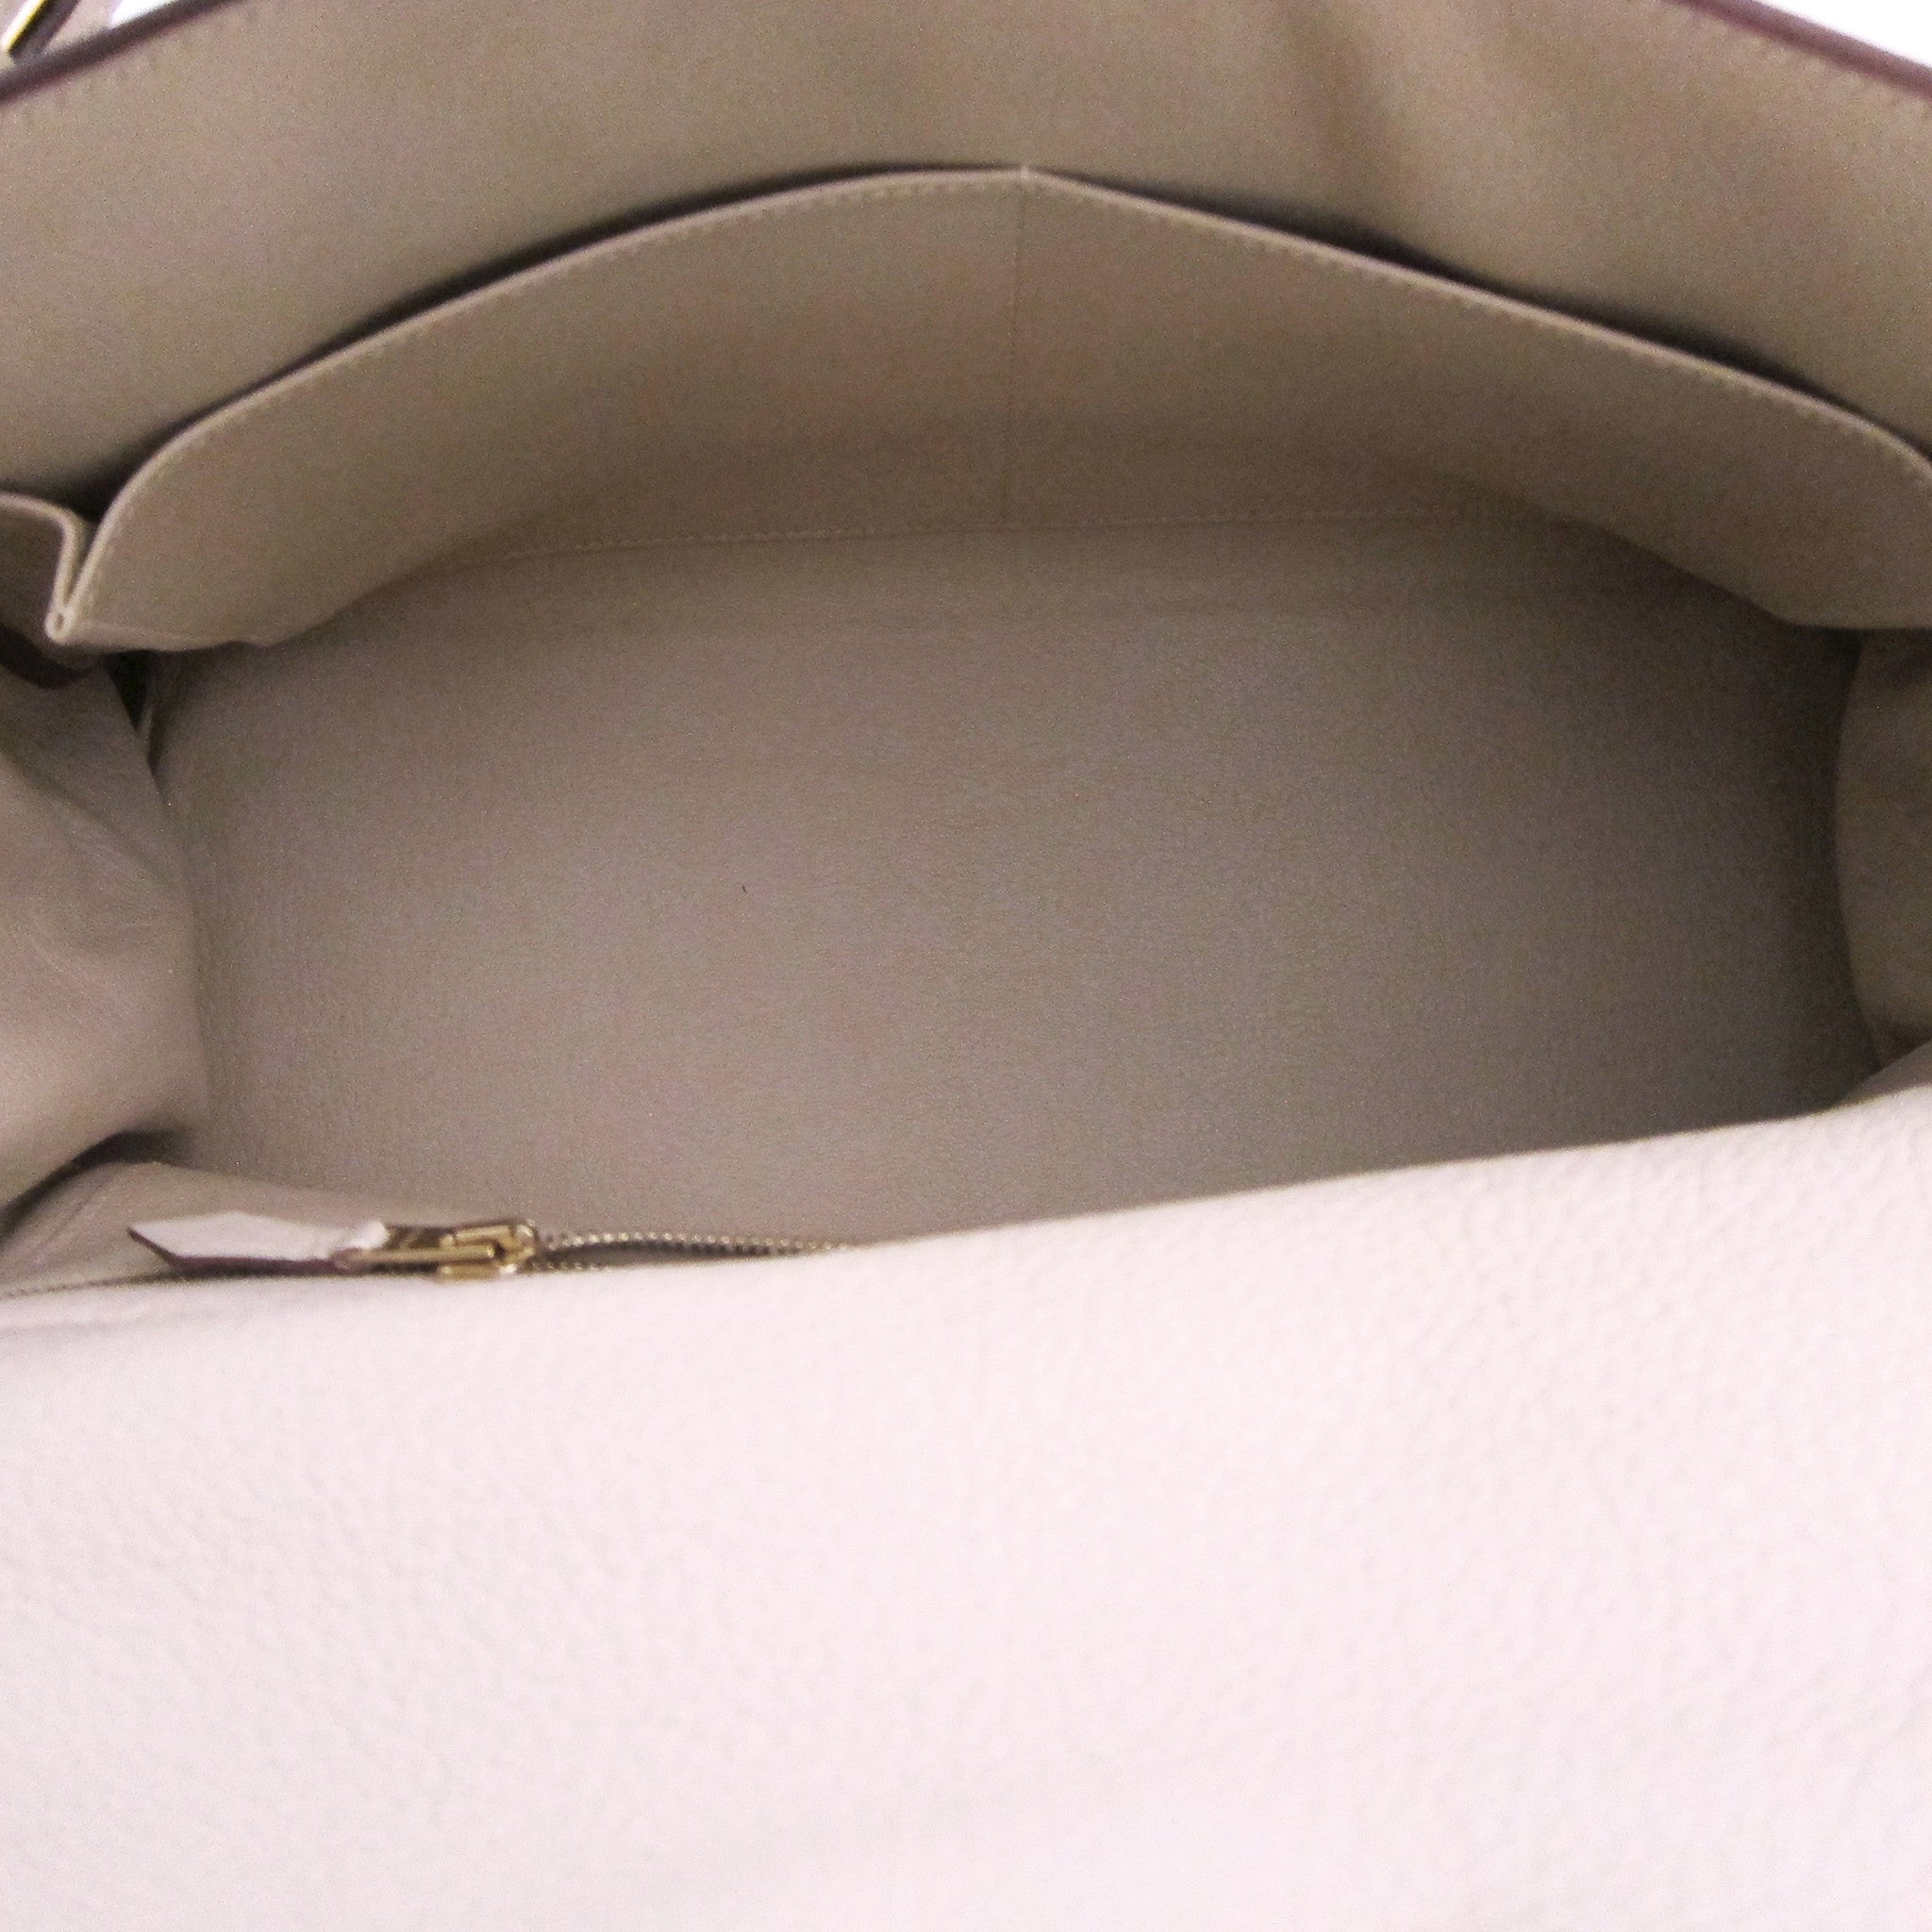 Hermès Kelly Shoulder Bag, Kelly Pochette, Kelly Cut - Chicjoy Tagged 32cm